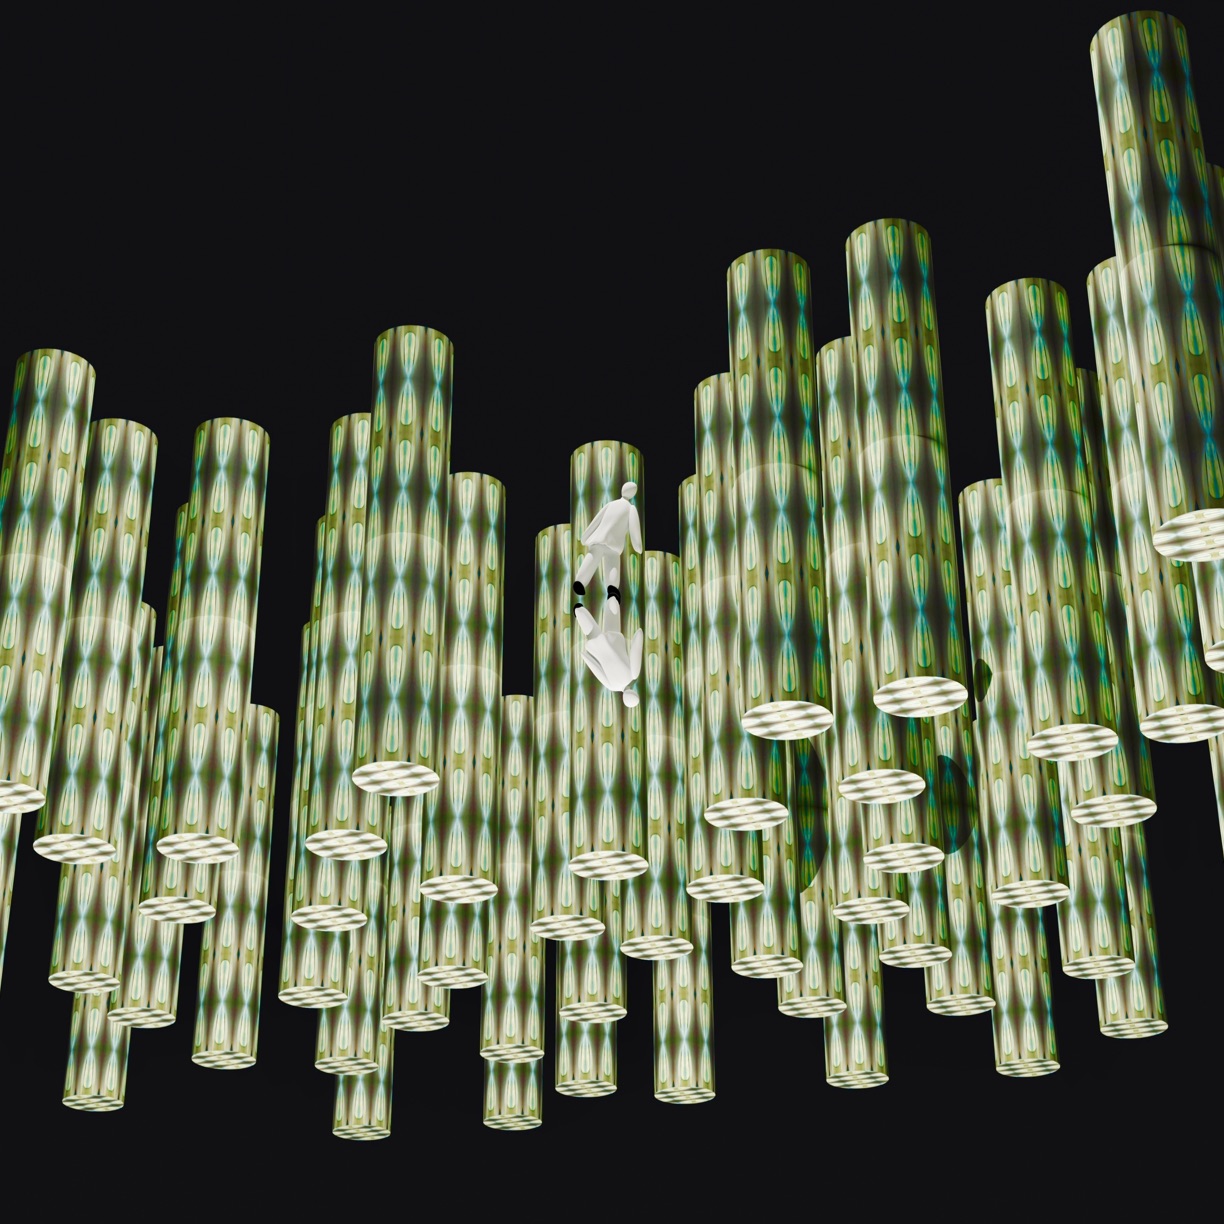 Atsushigraphのデジタルアート作品「Crystal Pillar」の画像です。